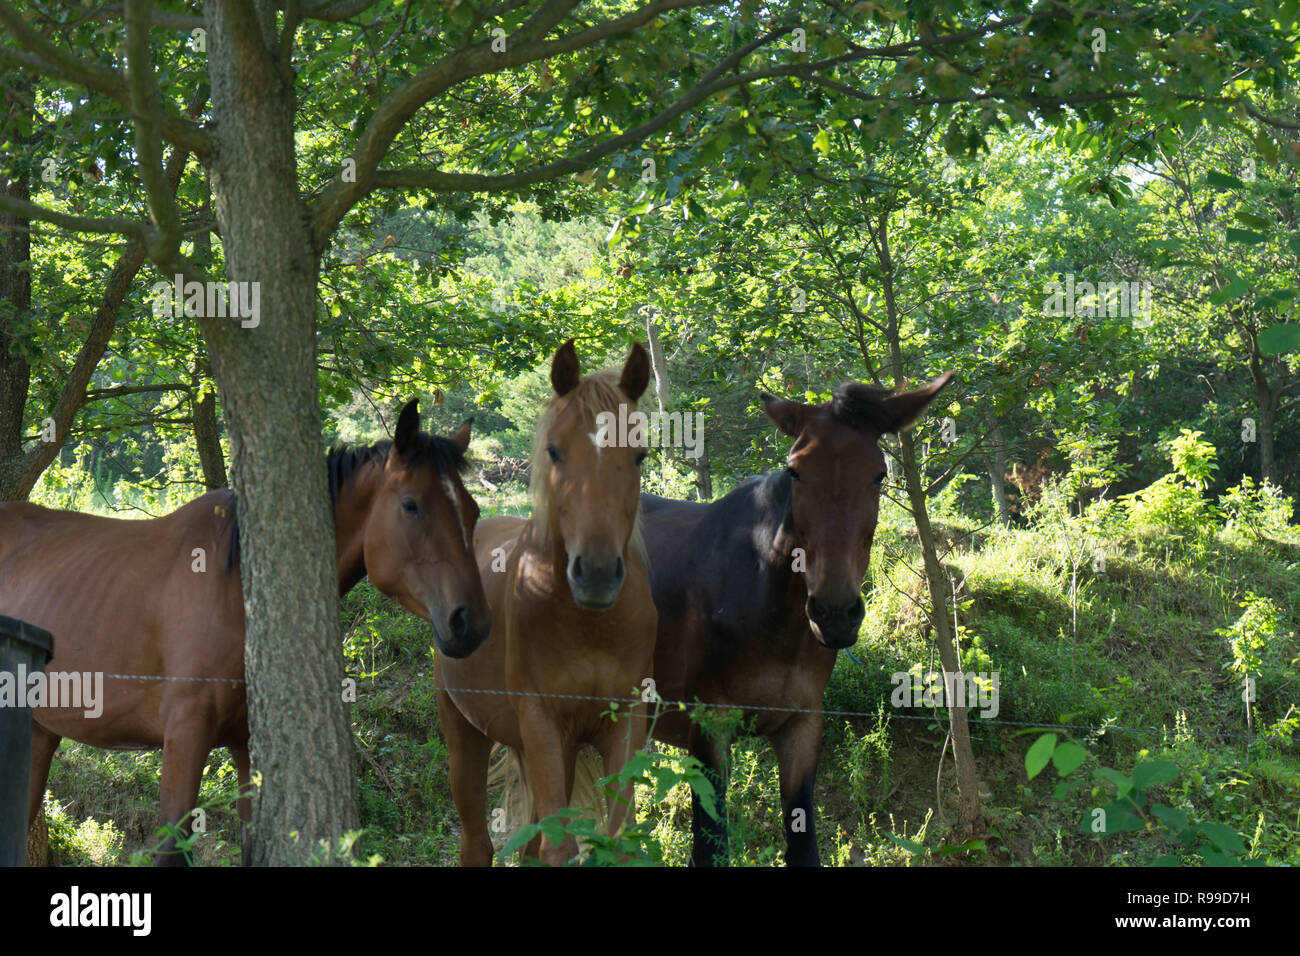 Kostenlose Pferde Unter Die Baume In Einem Kleinen Wald Stockfotografie Alamy